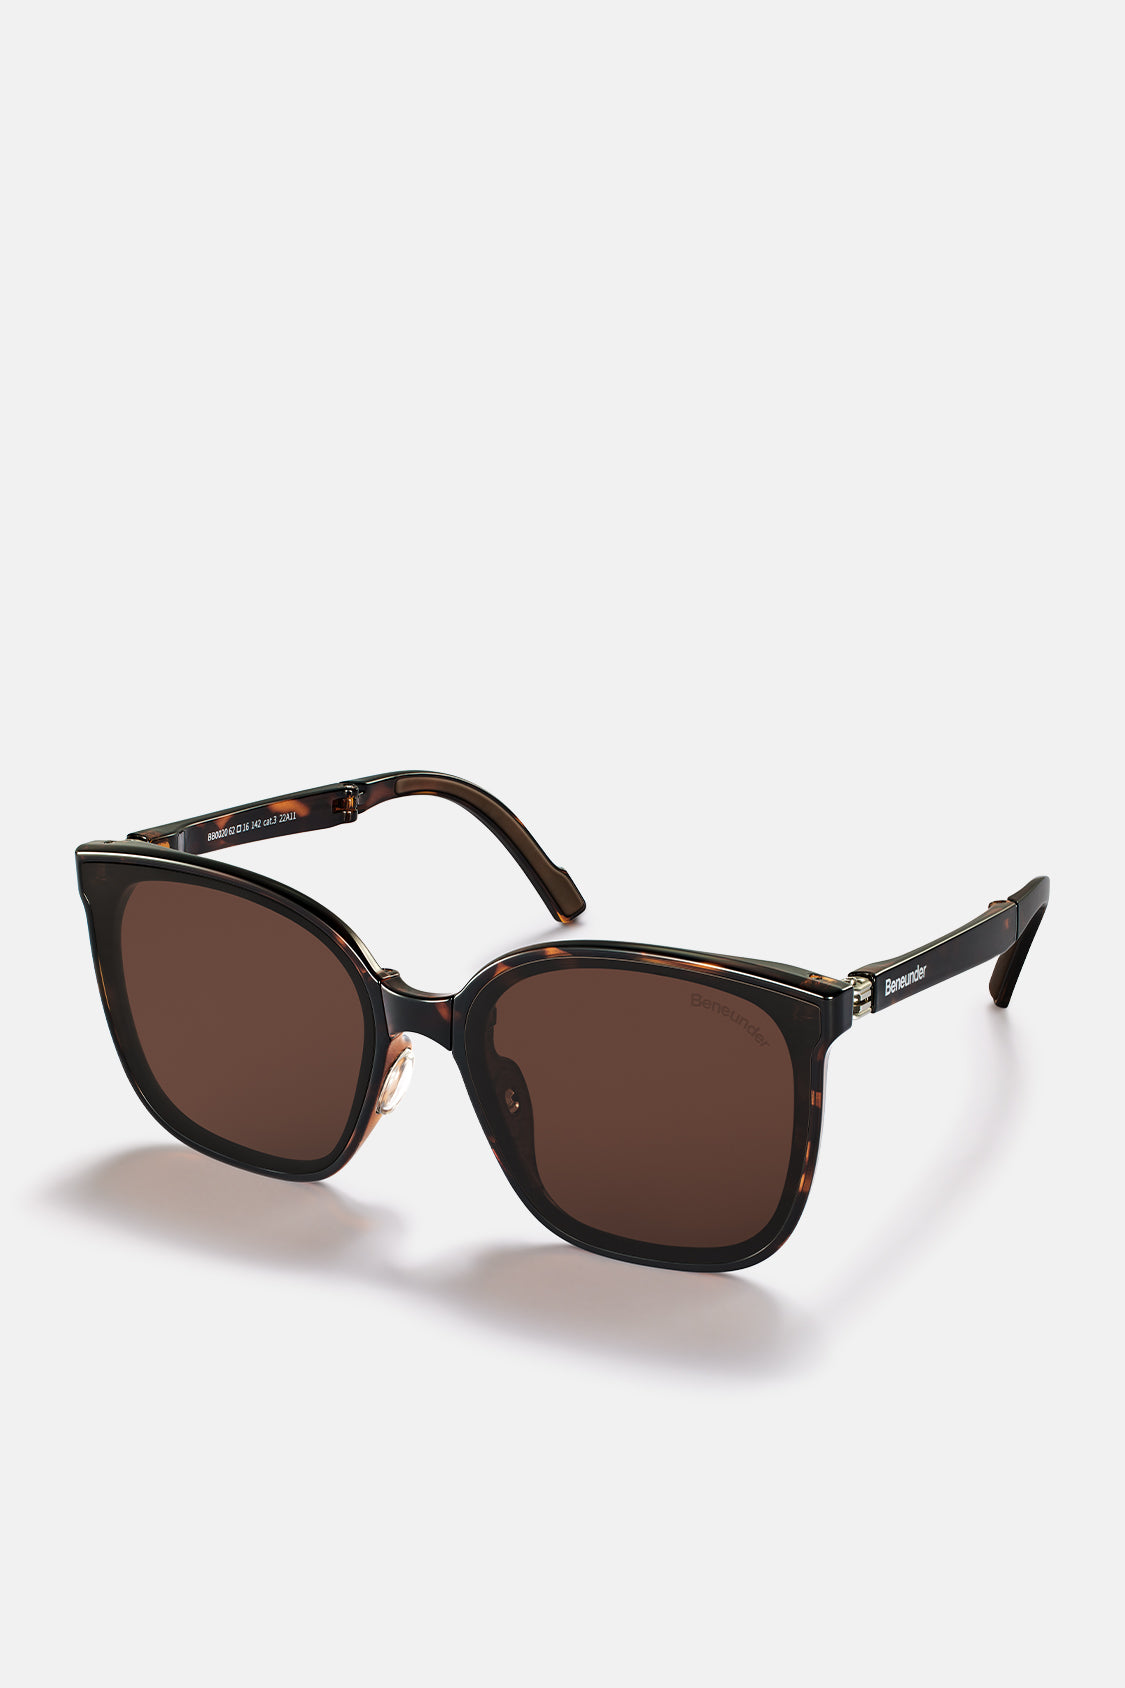 beneunder men's neonspace polarized folding sunglasses shades for women men #color_tortoiseshell tea